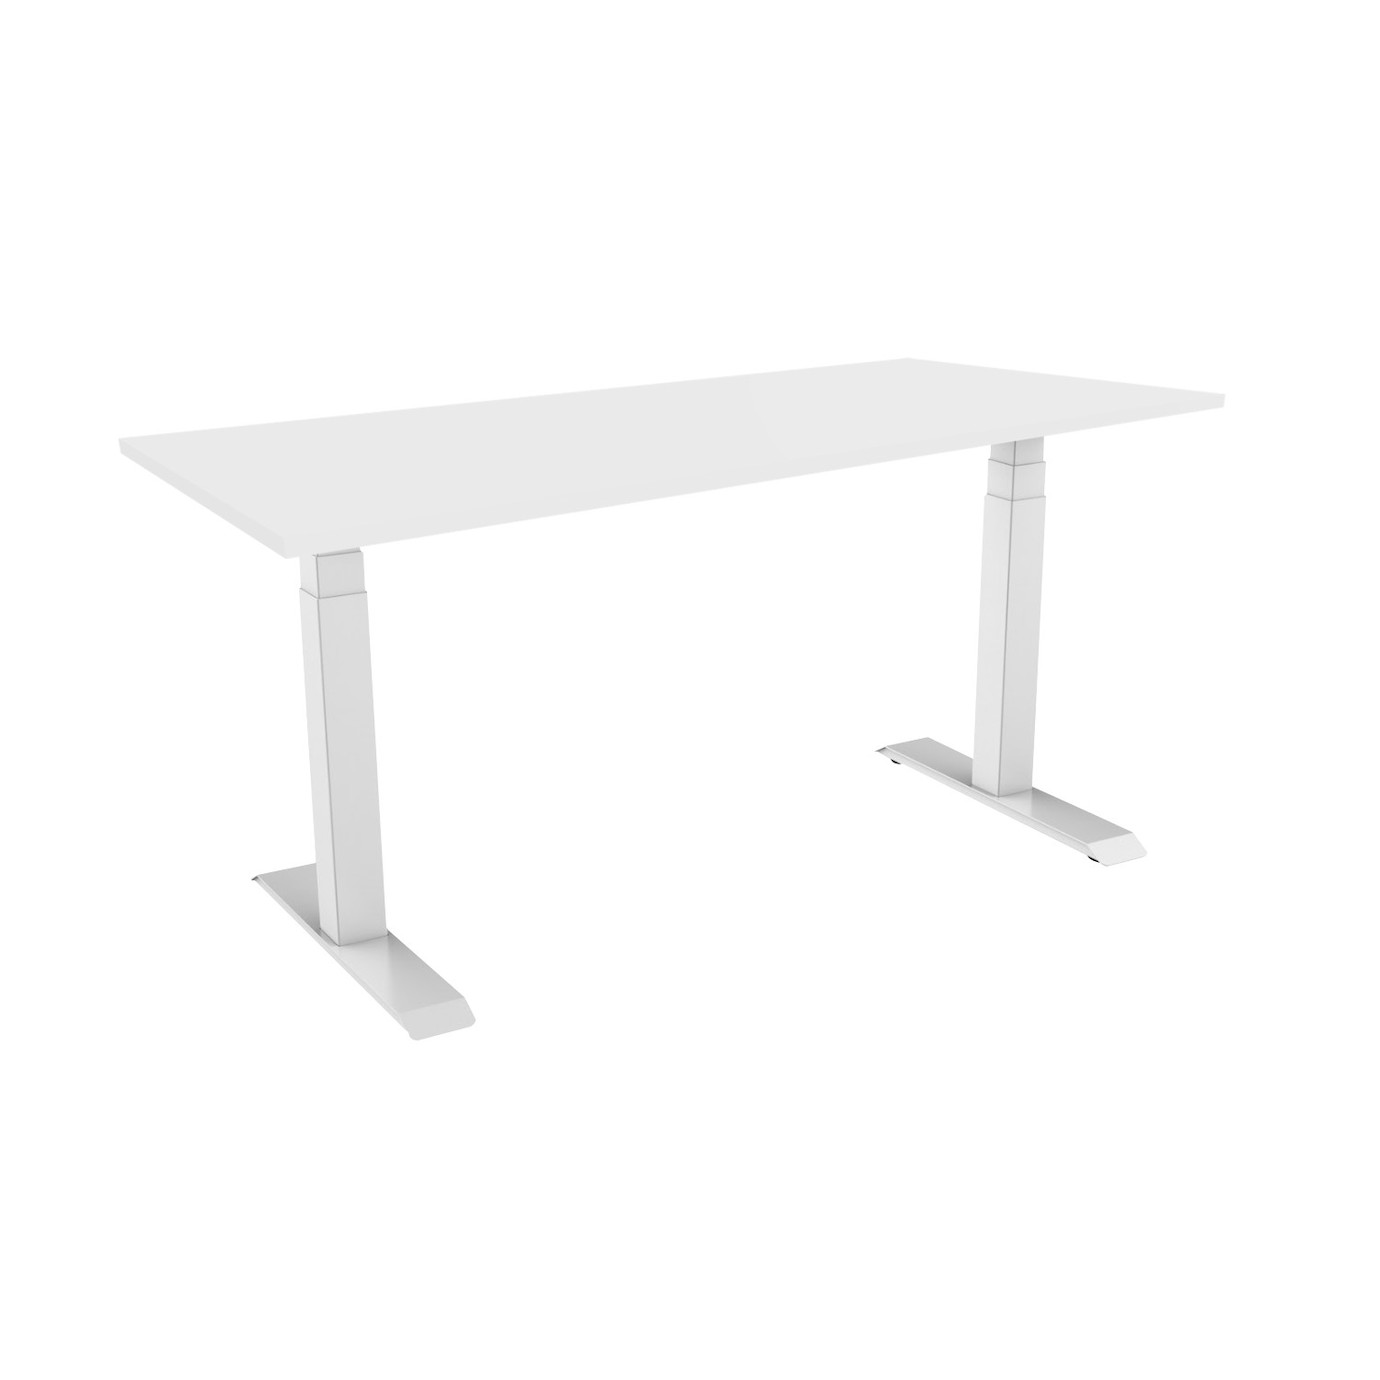 Vorschau: celexon höhenverstellbarer Schreibtisch Pro eAdjust-58123 - weiß, inkl. Tischplatte 125 x 75 cm